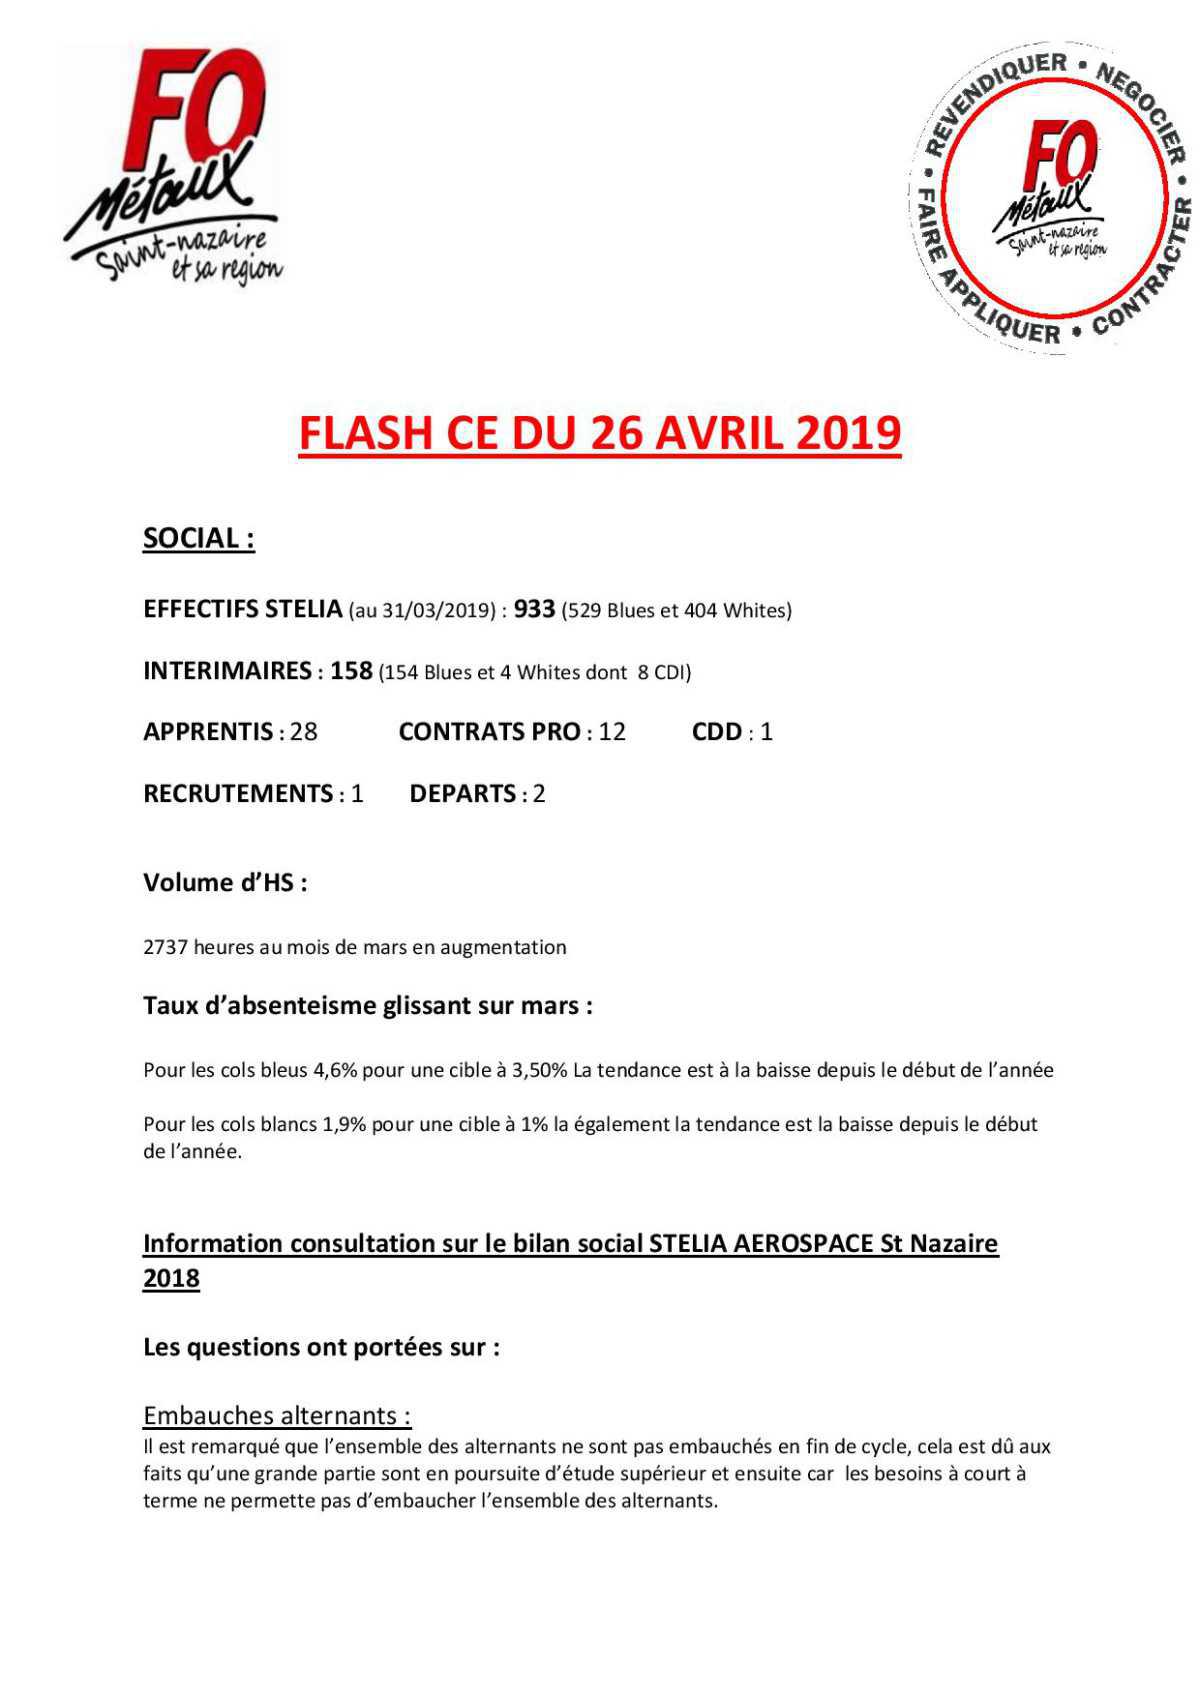 Flash CE du 26 avril 2019